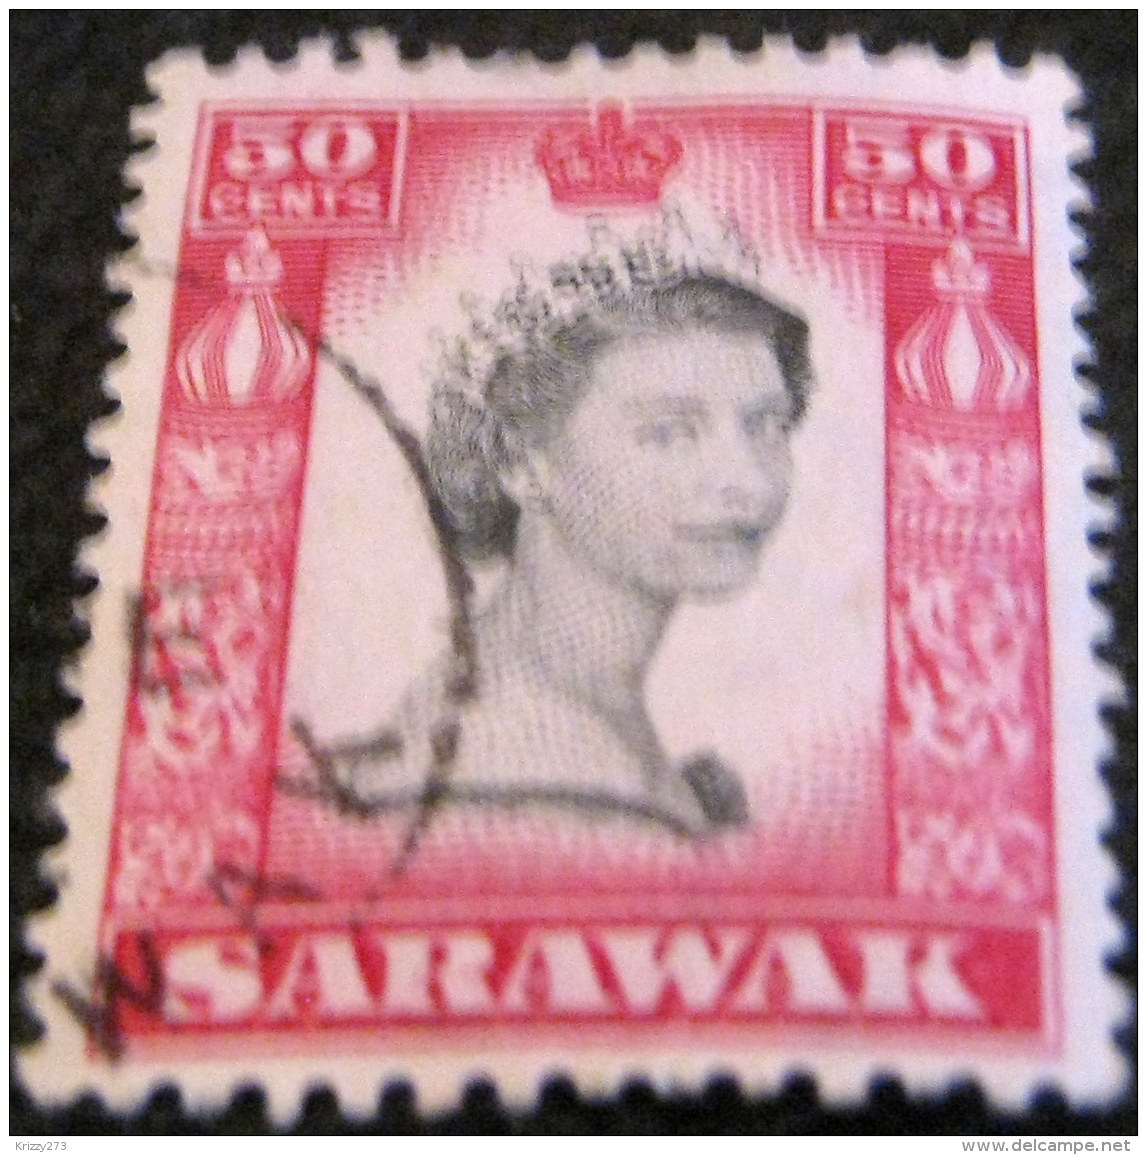 Sarawak 1955 Queen Elizabeth II 50c - Used - Sarawak (...-1963)